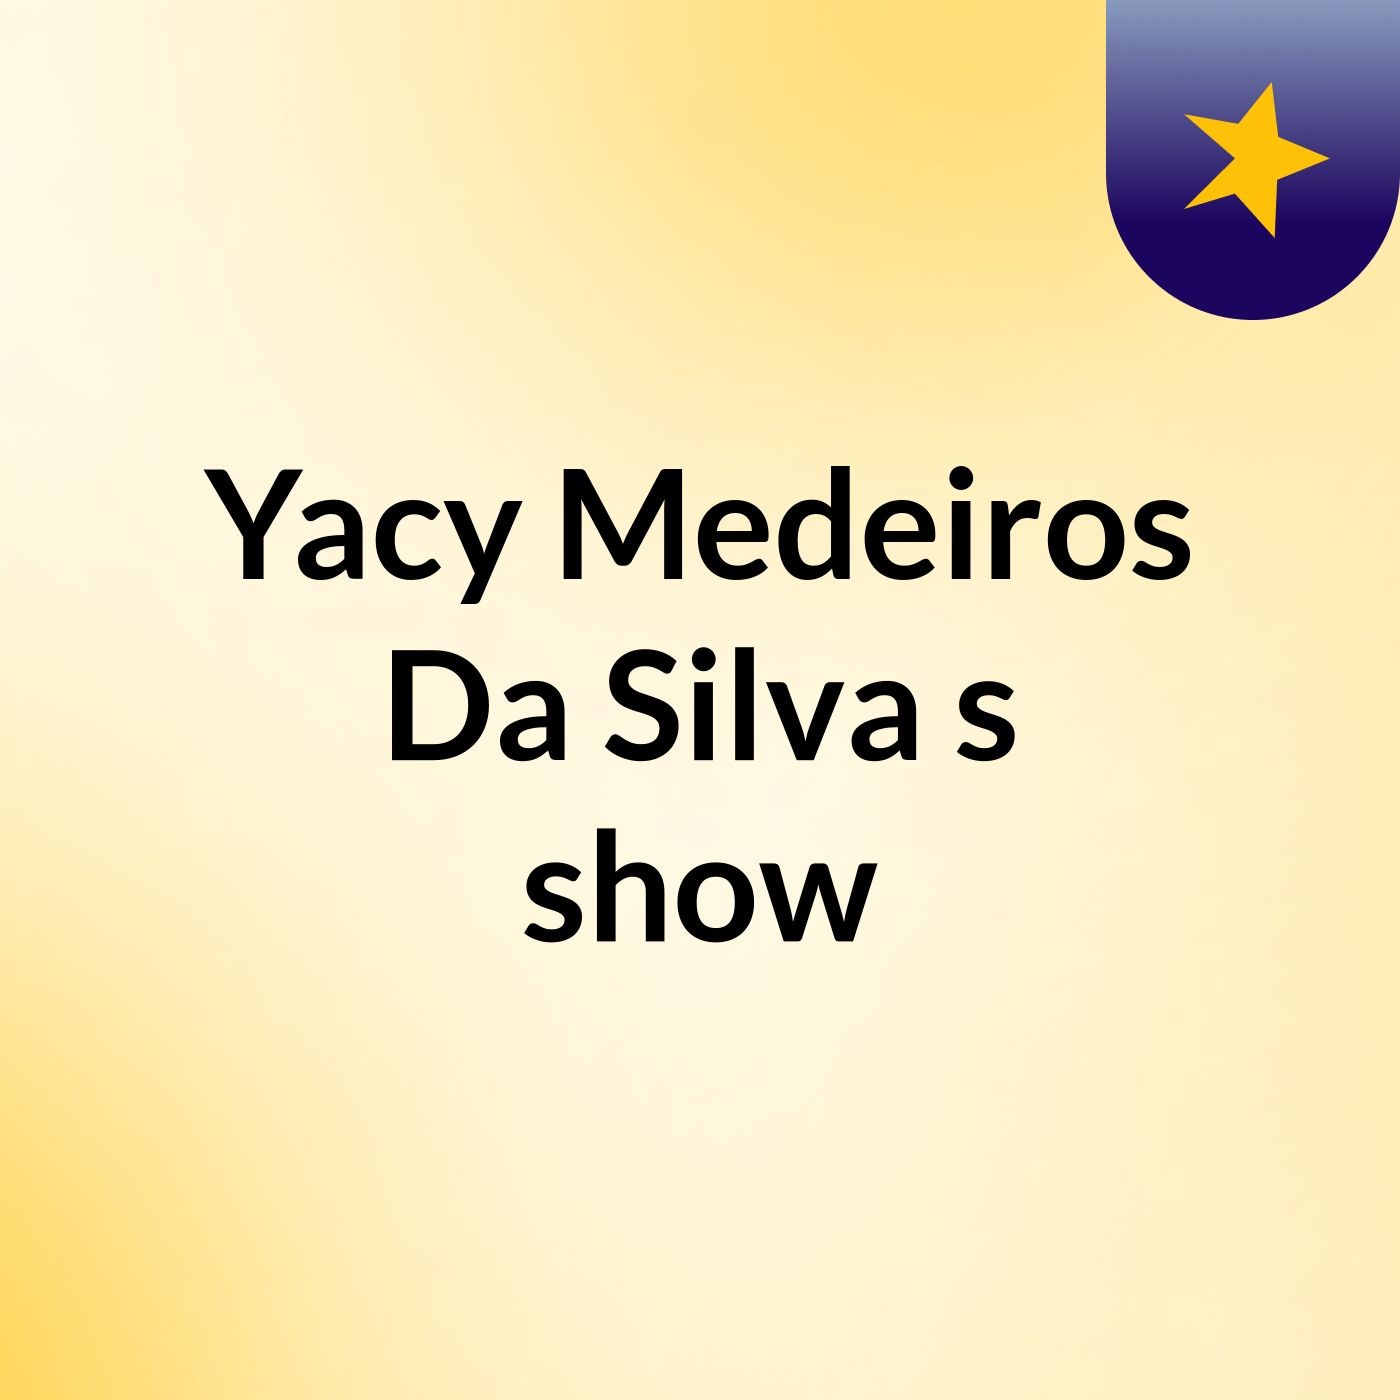 Episódio 8 - Yacy Medeiros Da Silva's show